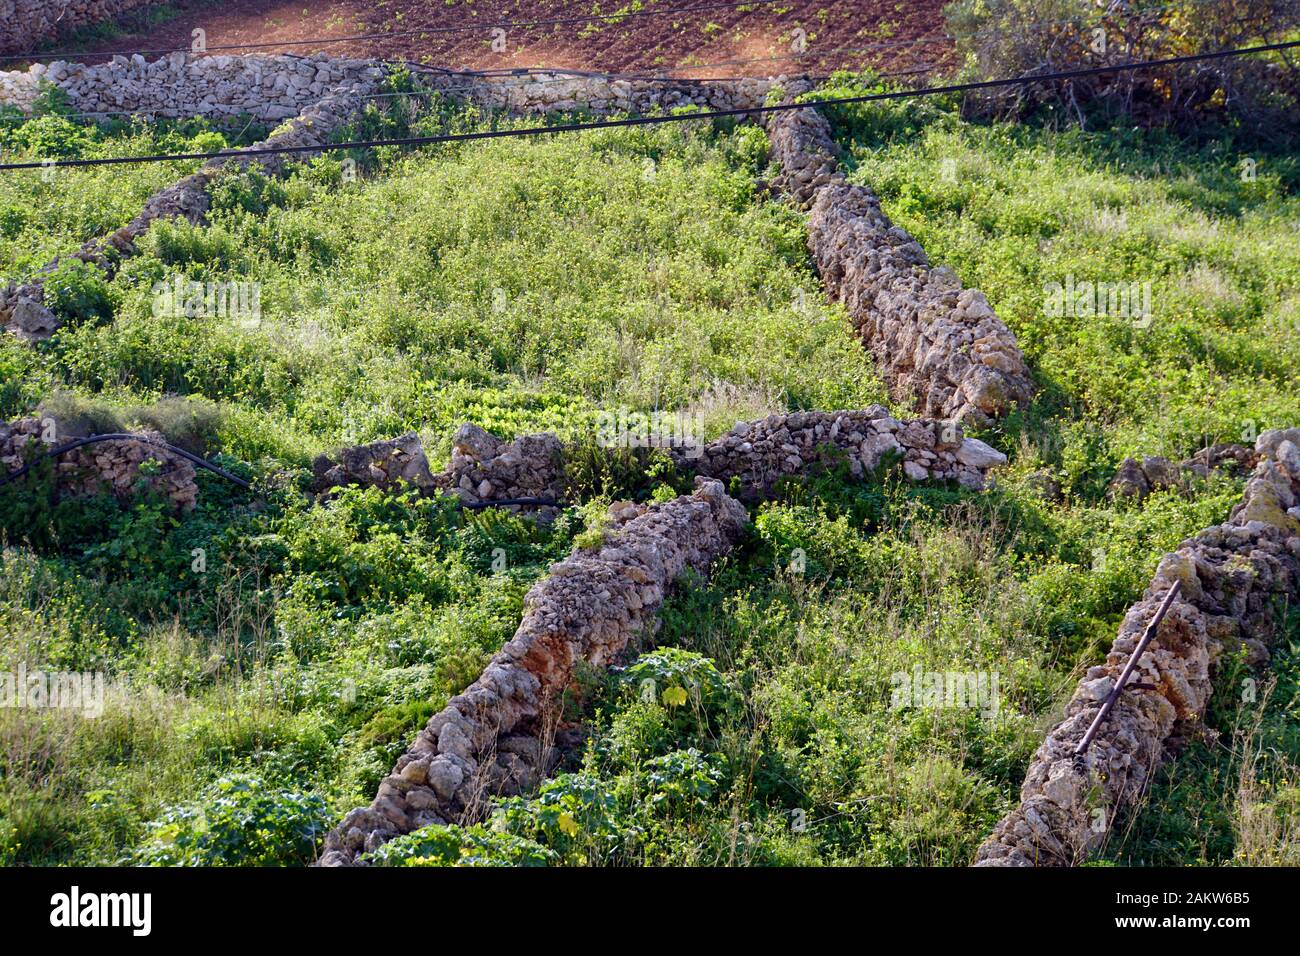 typische Agrarlandschaft mit Kleinfeldwirtschaft zwischen Kalkstein- Trockenmauern, Marfa Ridge, Mellieha, Malta Stock Photo